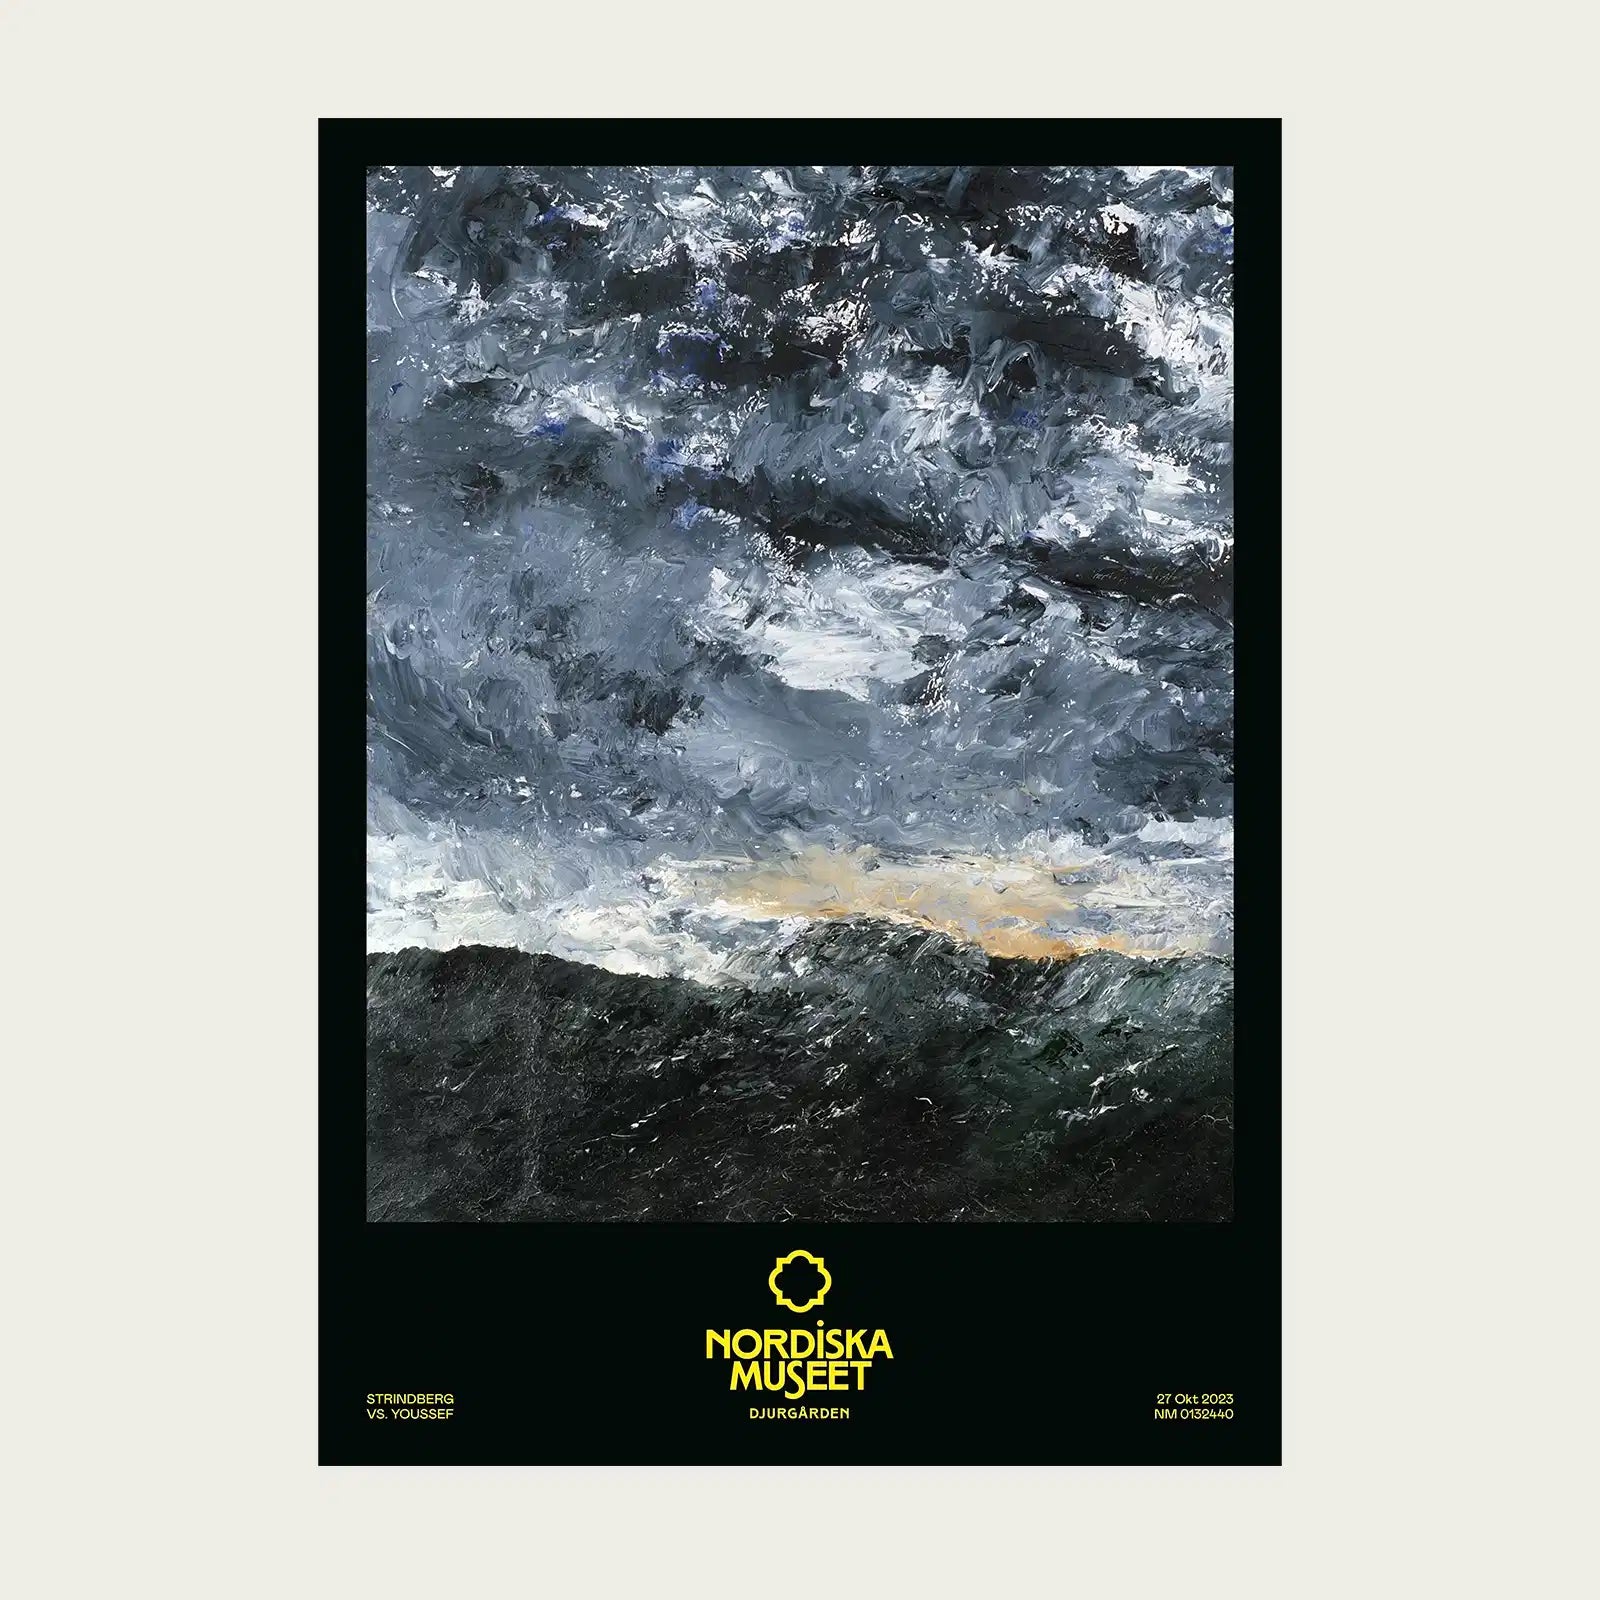    svart-affisch-med-motiv-pa-august-strindbergs-oljemalning-vagen-som-forestaller-ett-stormigt-hav